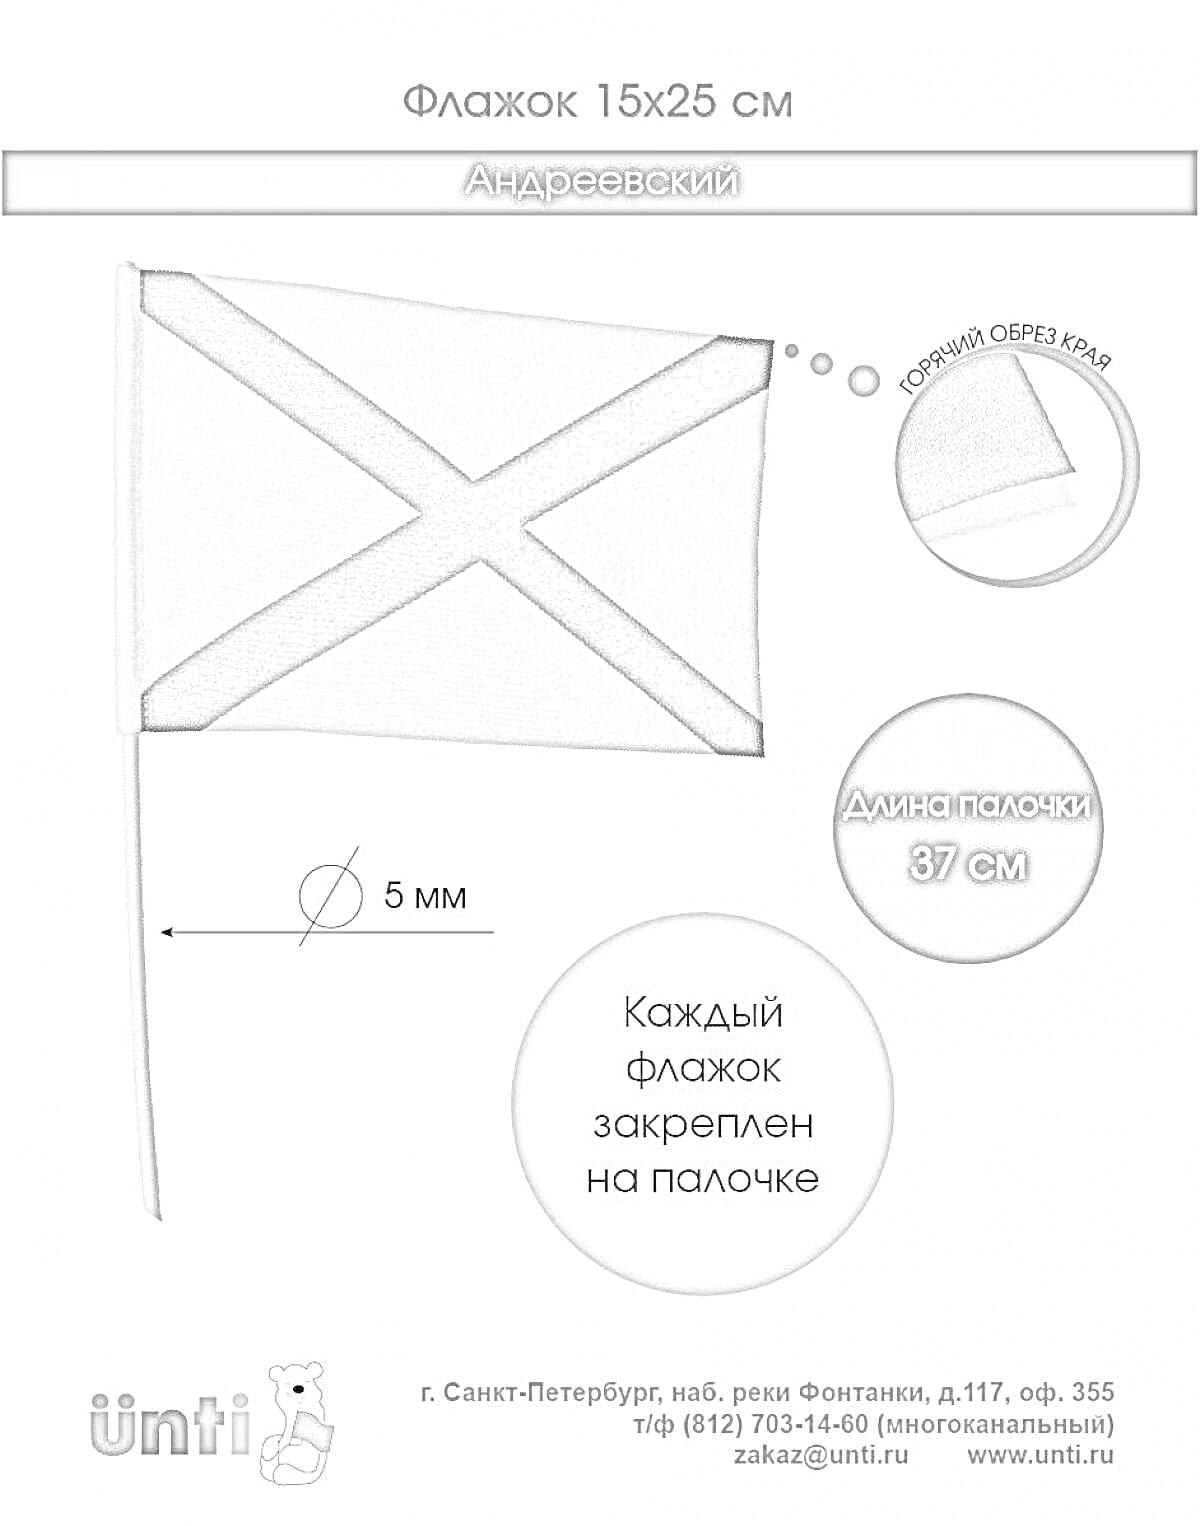 Раскраска Флажок (размер 15x25 см) на палочке длиной 37 см, изображён Андреевский флаг